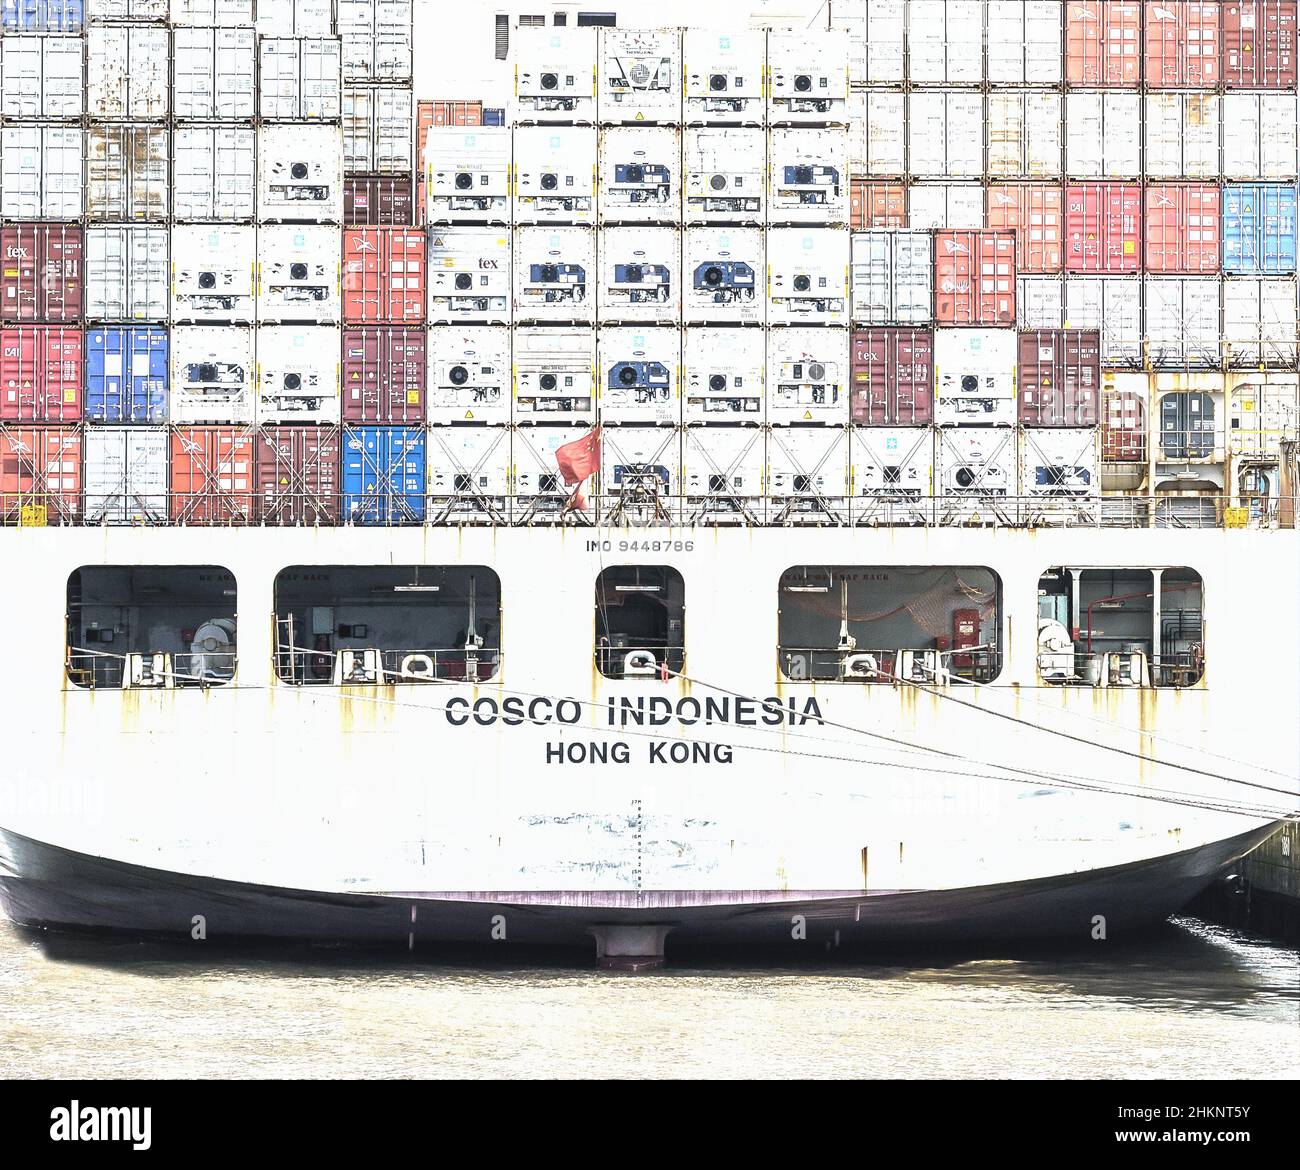 Rückseite eines voll beladenen Containerschiffs - farbreduzierte high-key-Aufnahme Stock Photo